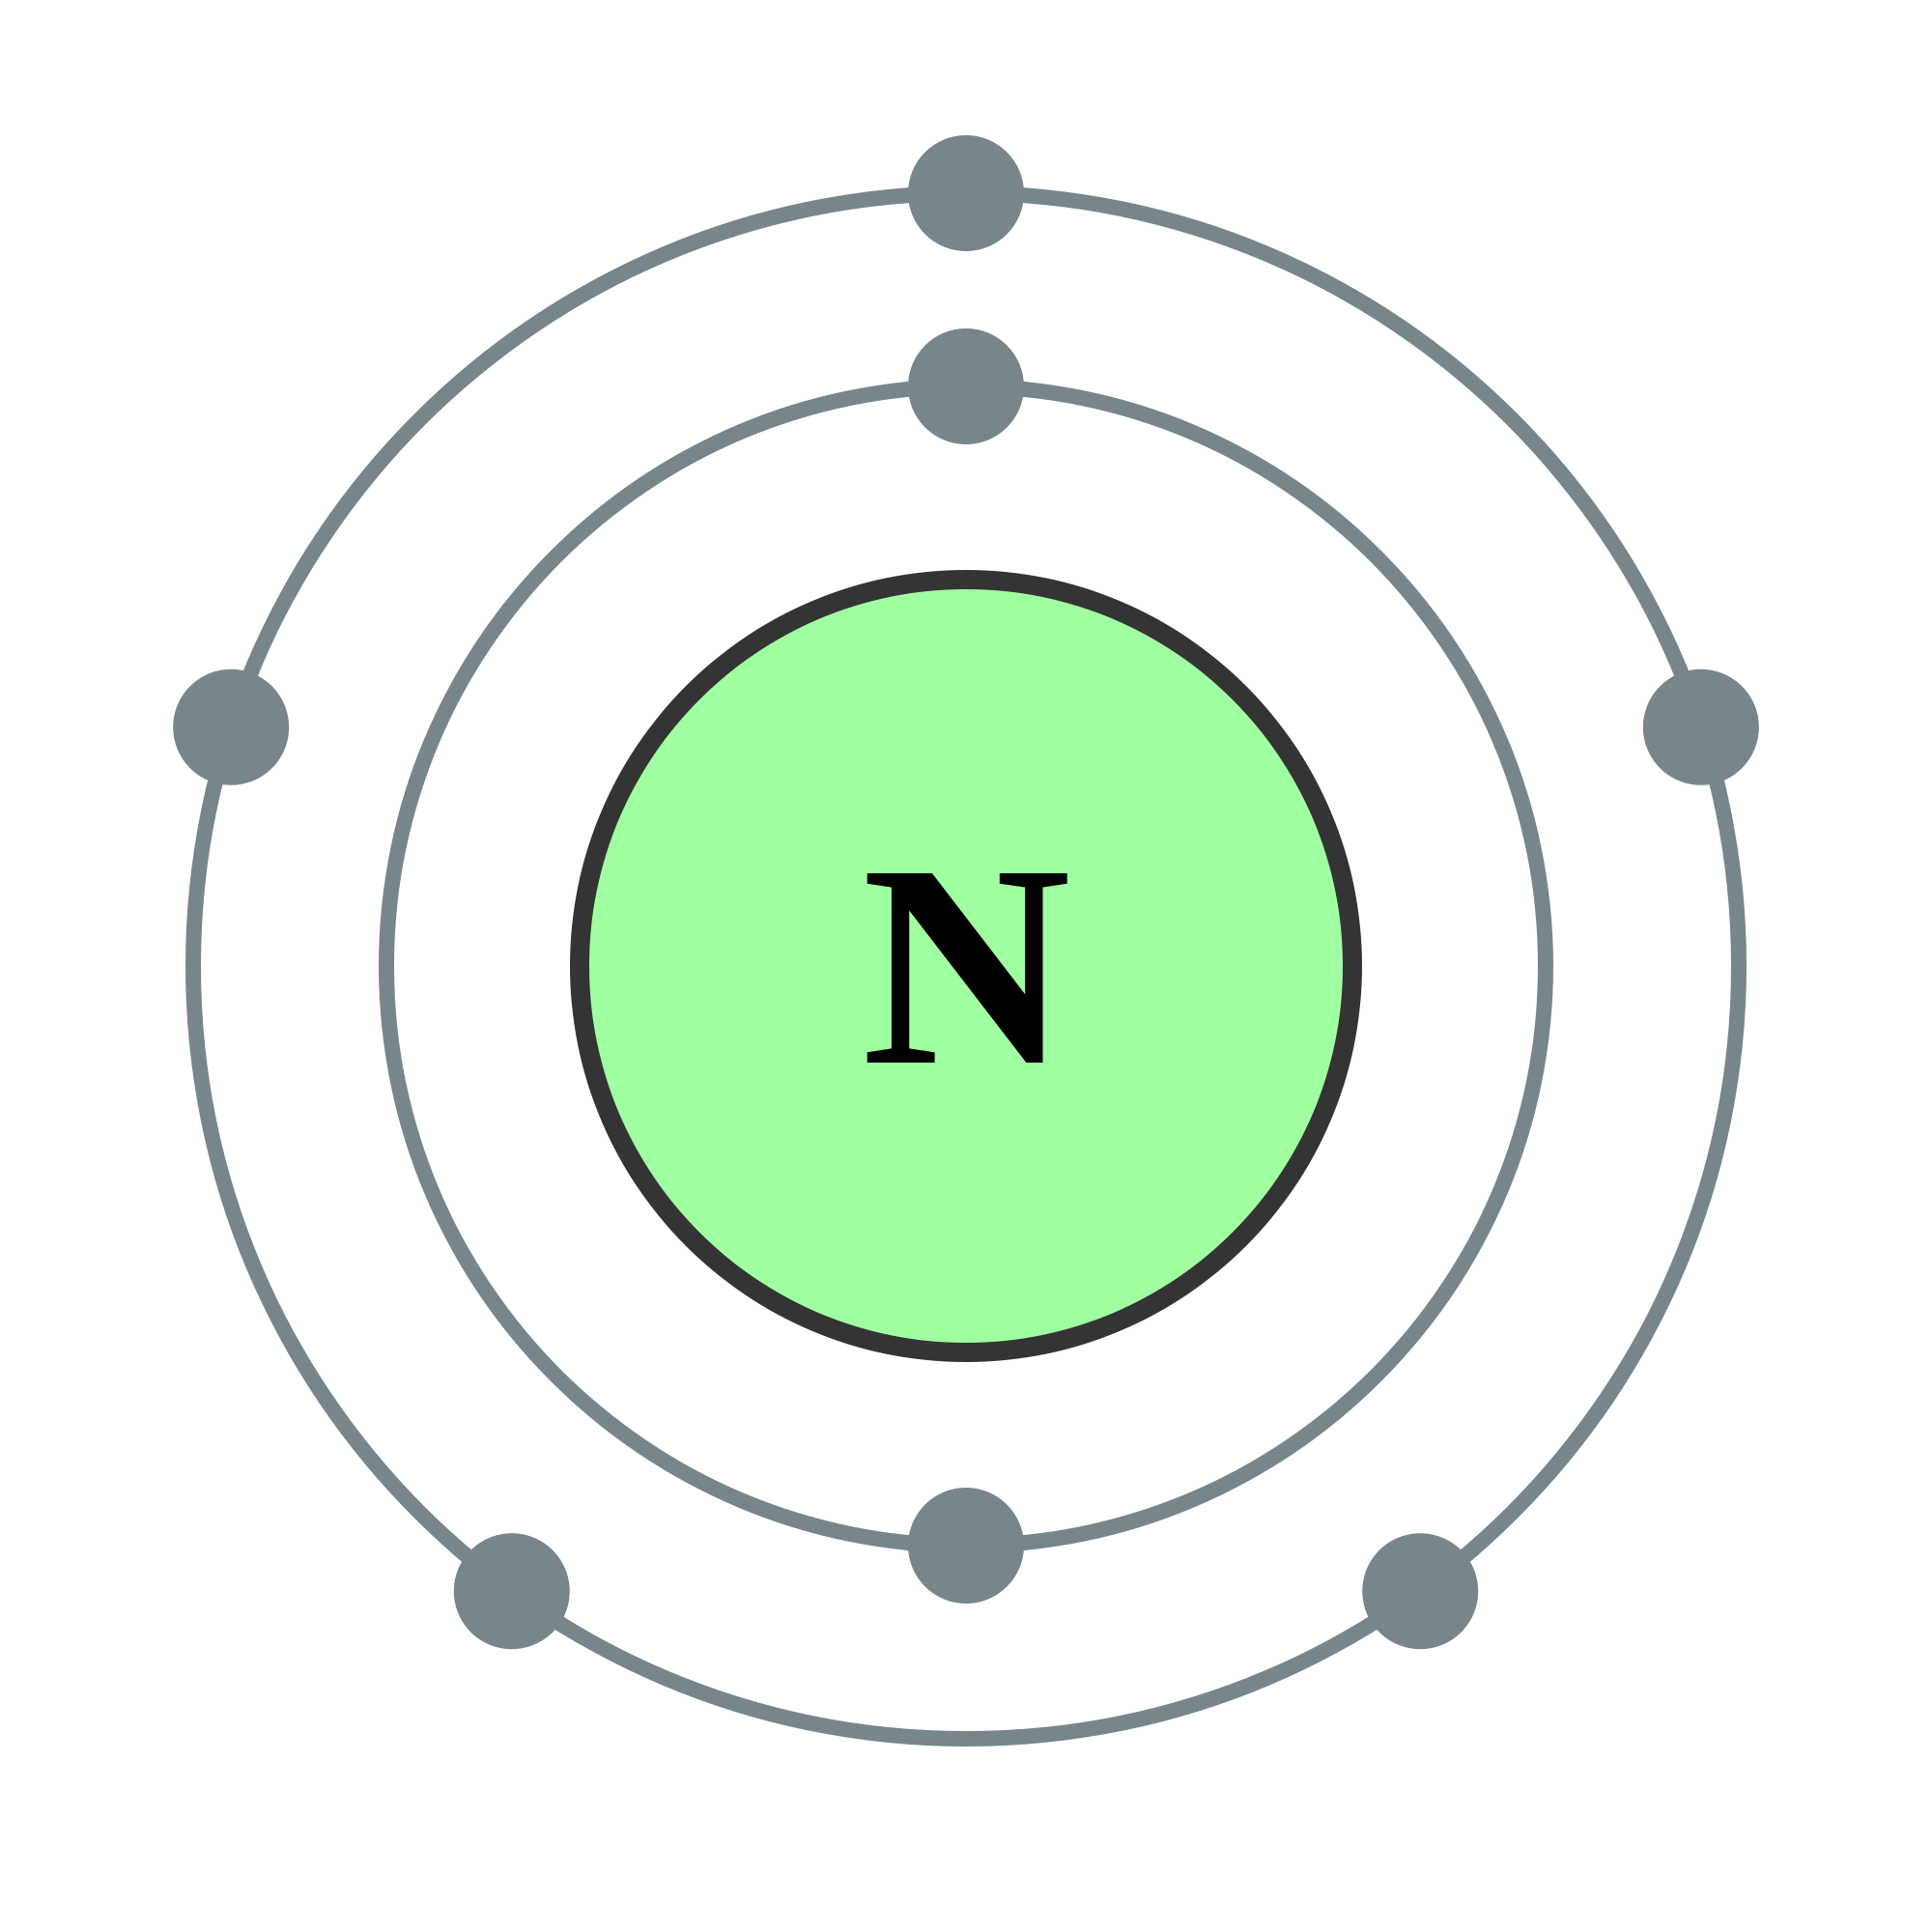 Element cell for 07-Nitrogen